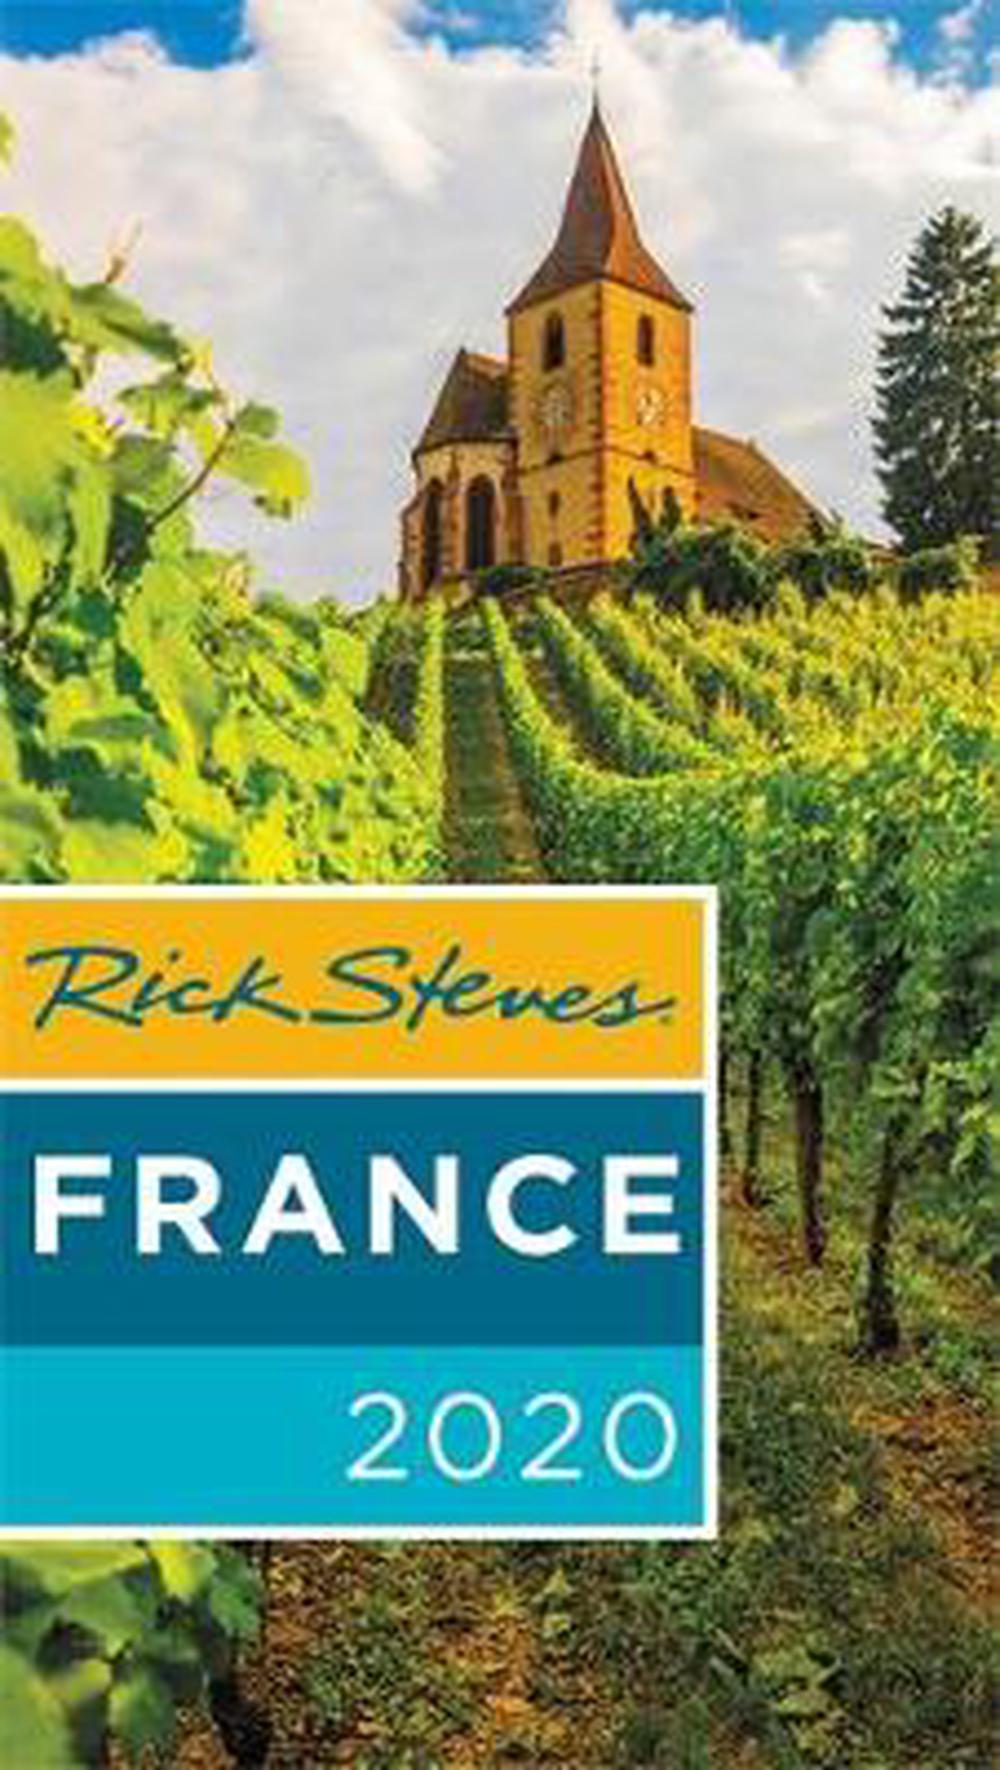 Rick Steves France 2020 by Rick Steves, Hardcover, 9781641711449 Buy